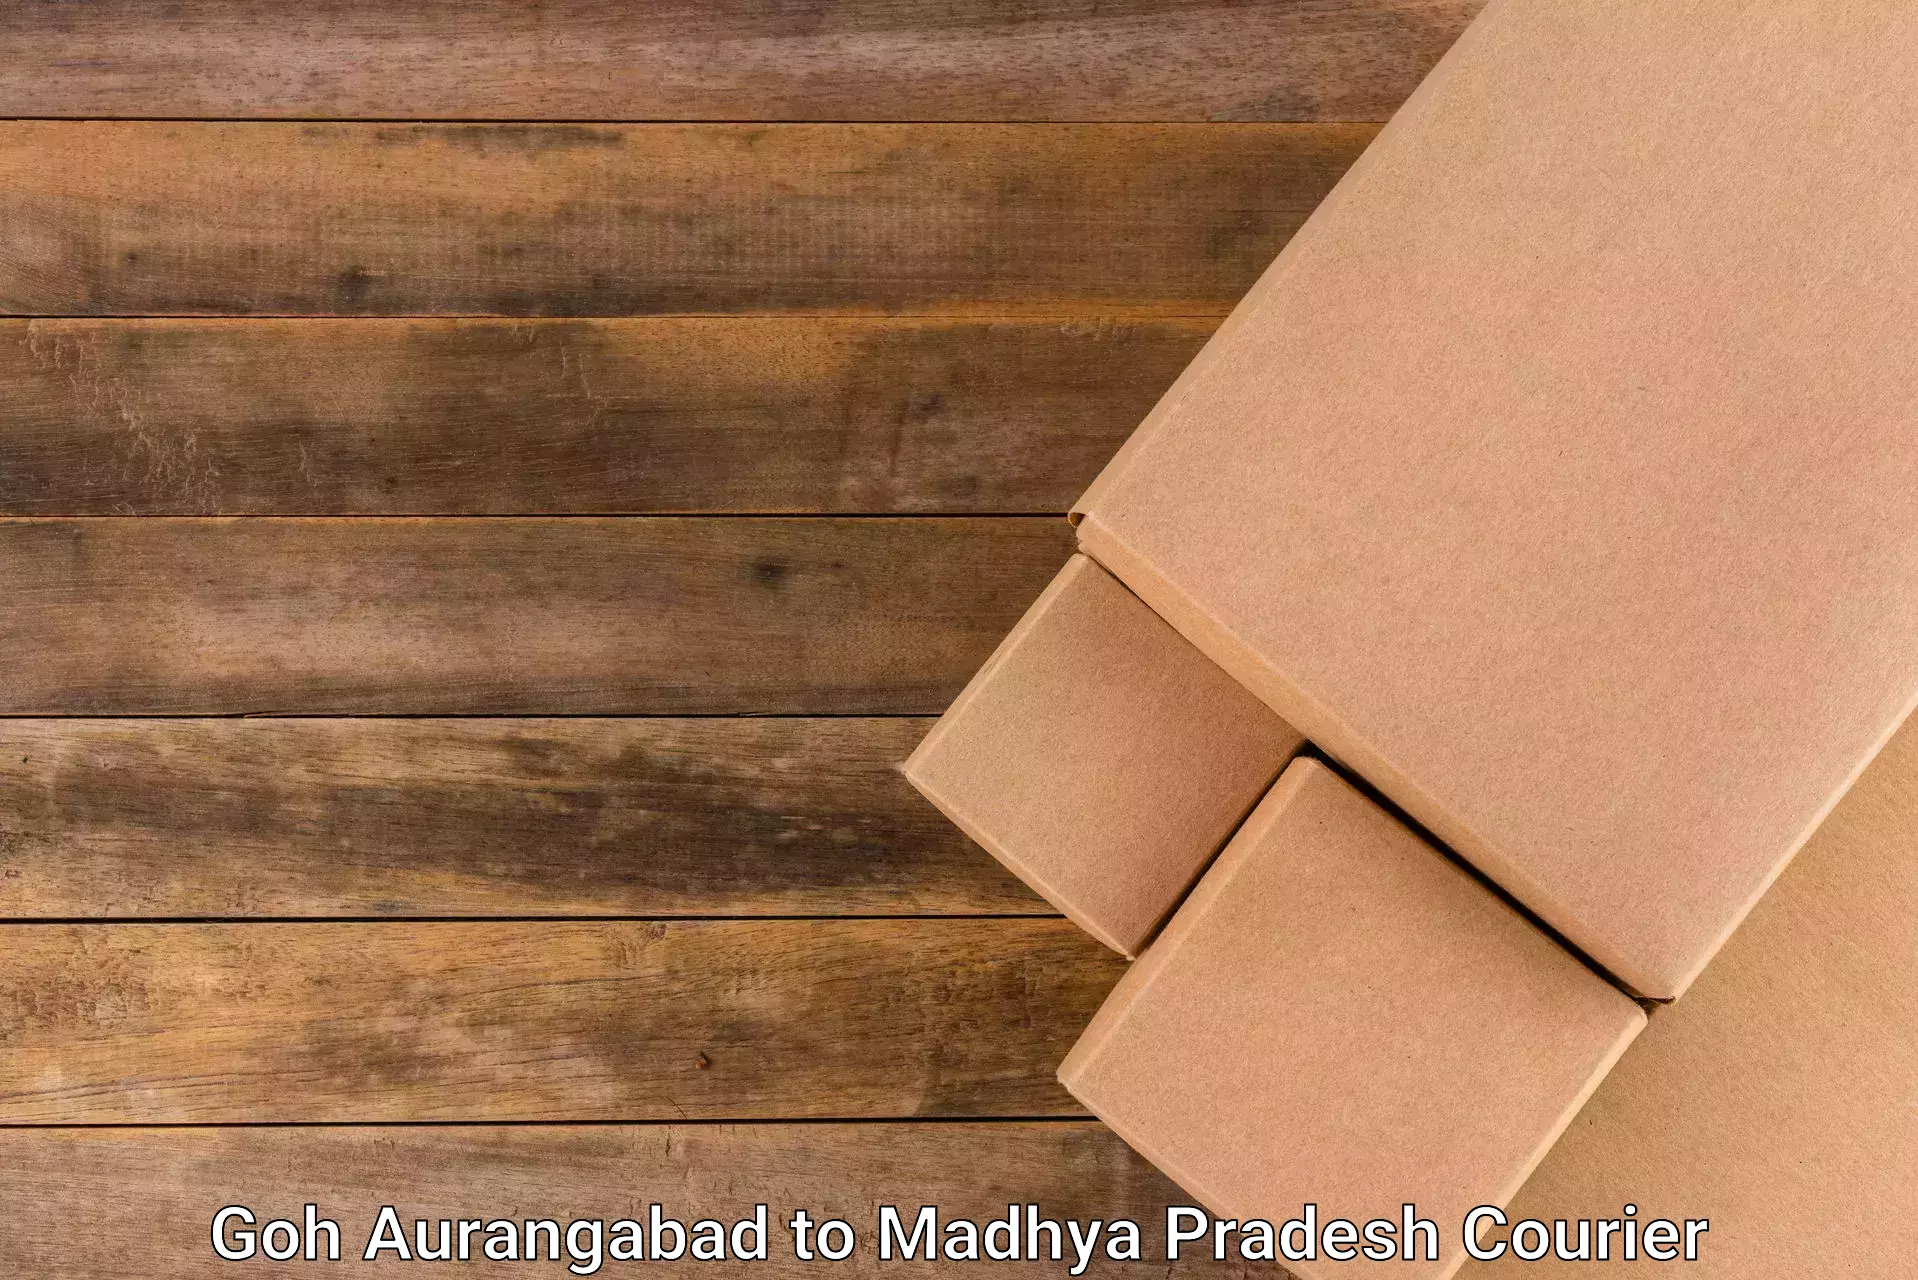 Long distance courier Goh Aurangabad to Madwas